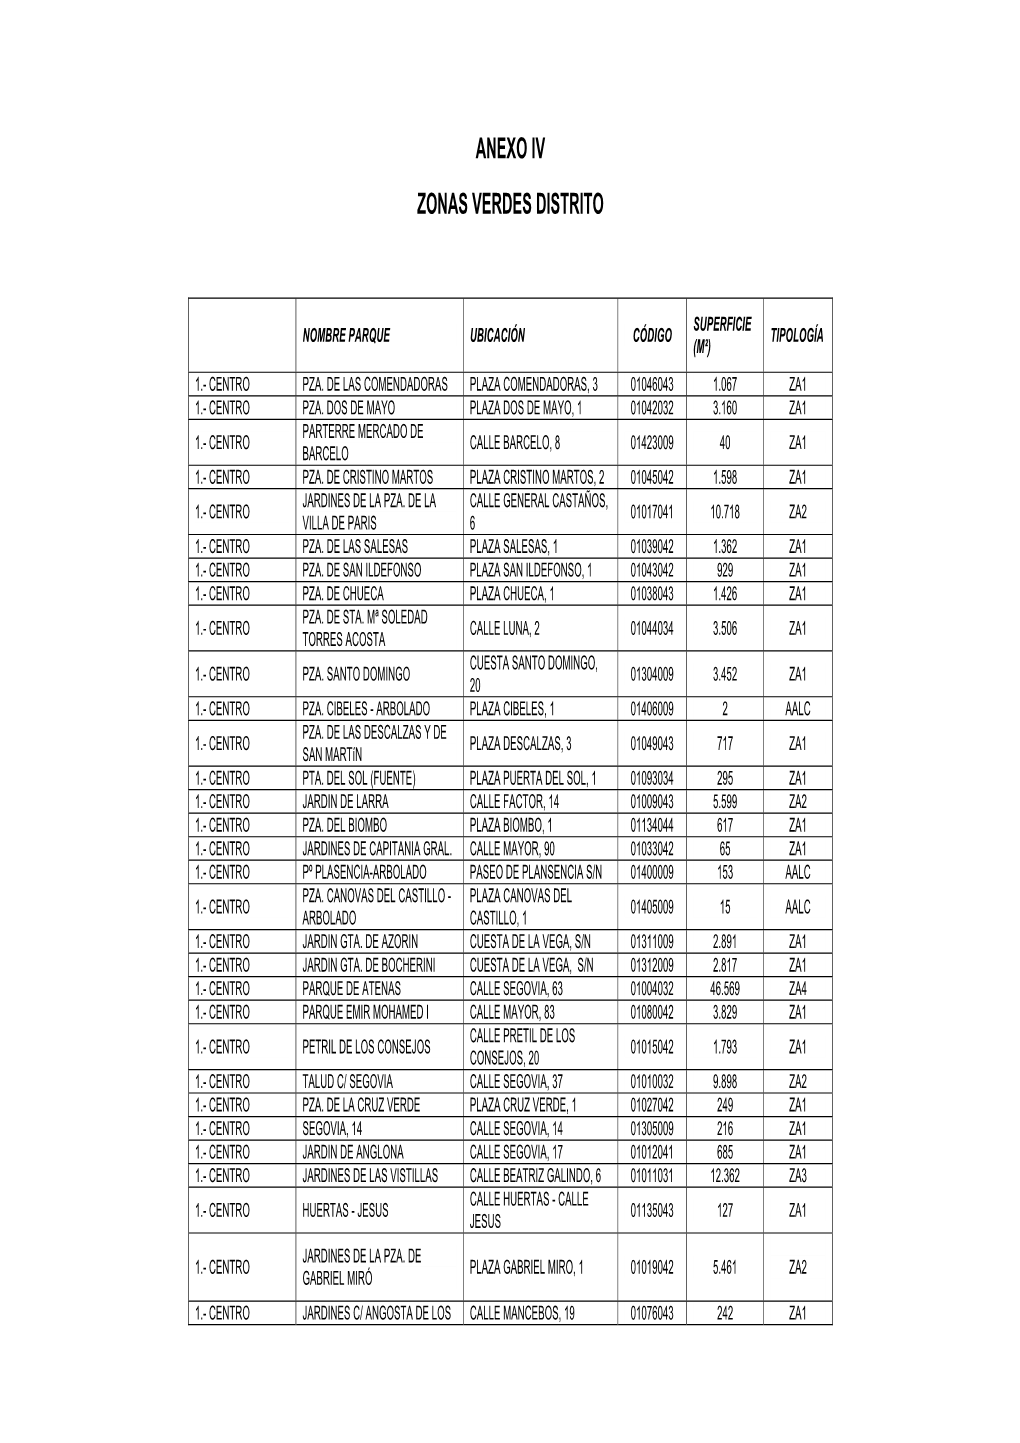 Anexos IV Y V. Distritos. ANM 2015, 61 PDF